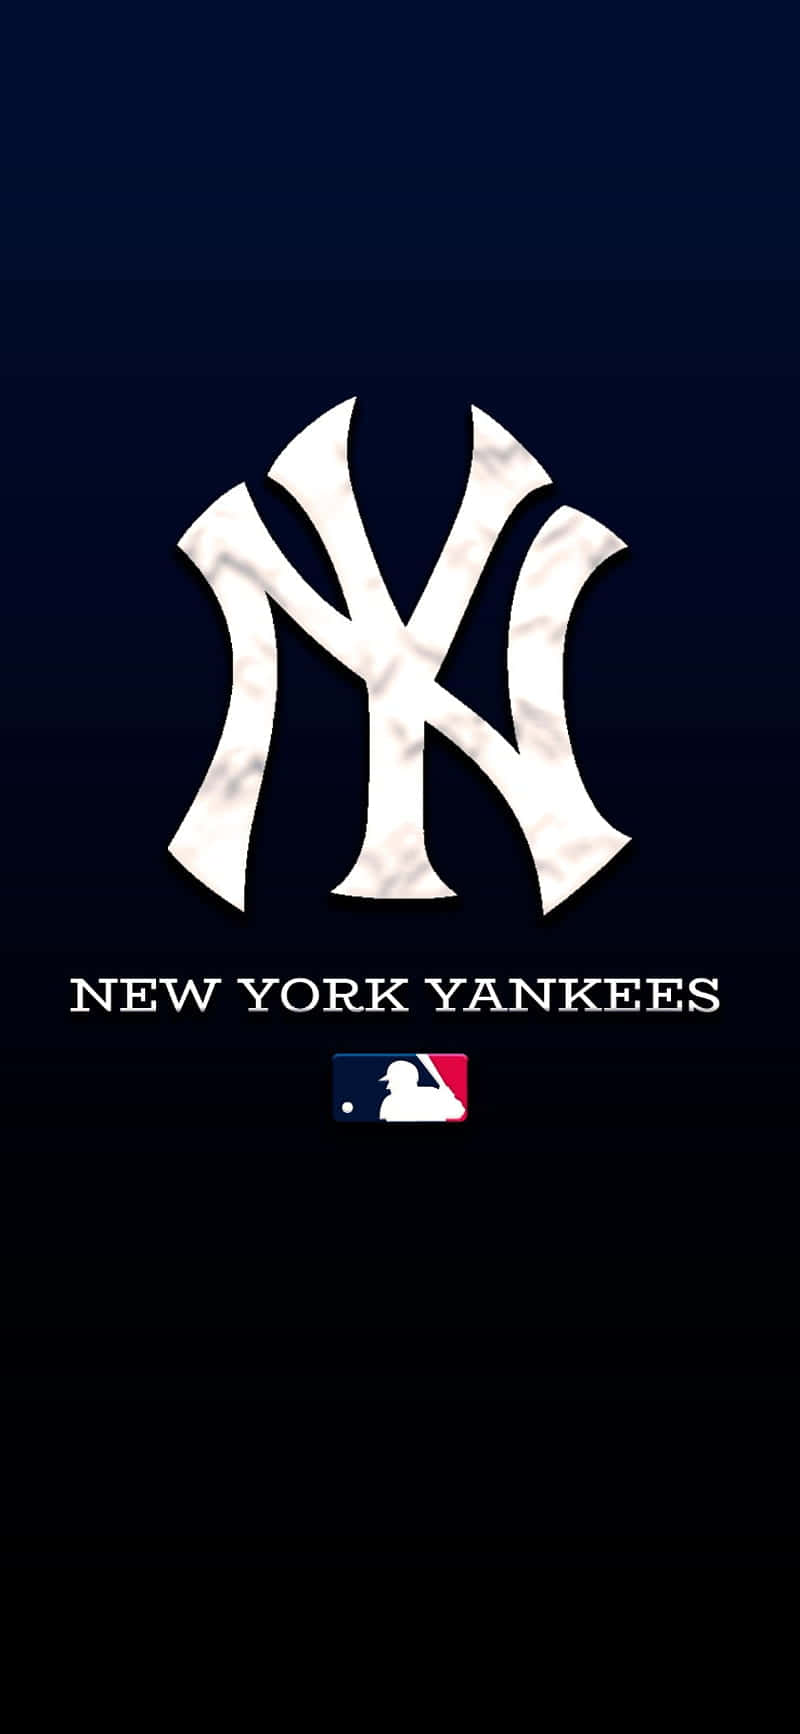 Portail Tuo Orgoglio Per I Ny Yankees Ovunque Con Una Cover Ufficiale Per Iphone! Sfondo